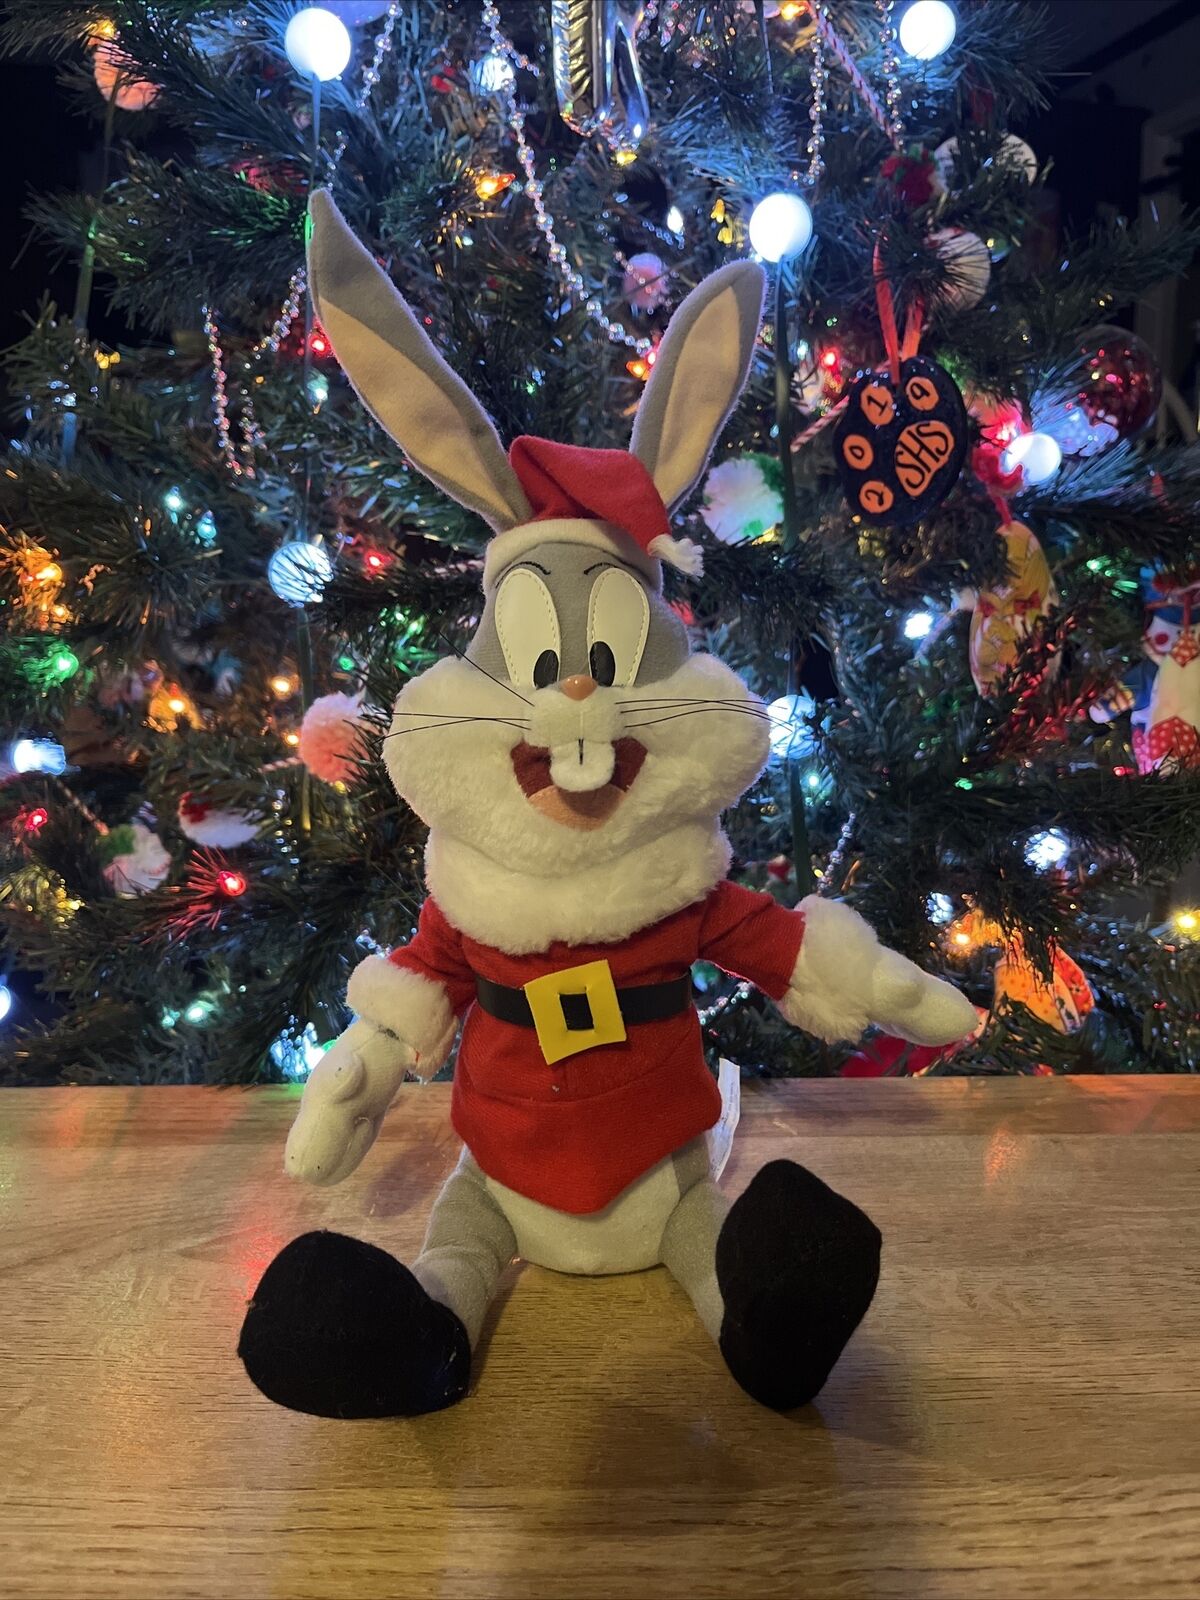 Looney Tunes Bugs Bunny As Santa Claus Warner Bros 16” Plush Vintage 1997